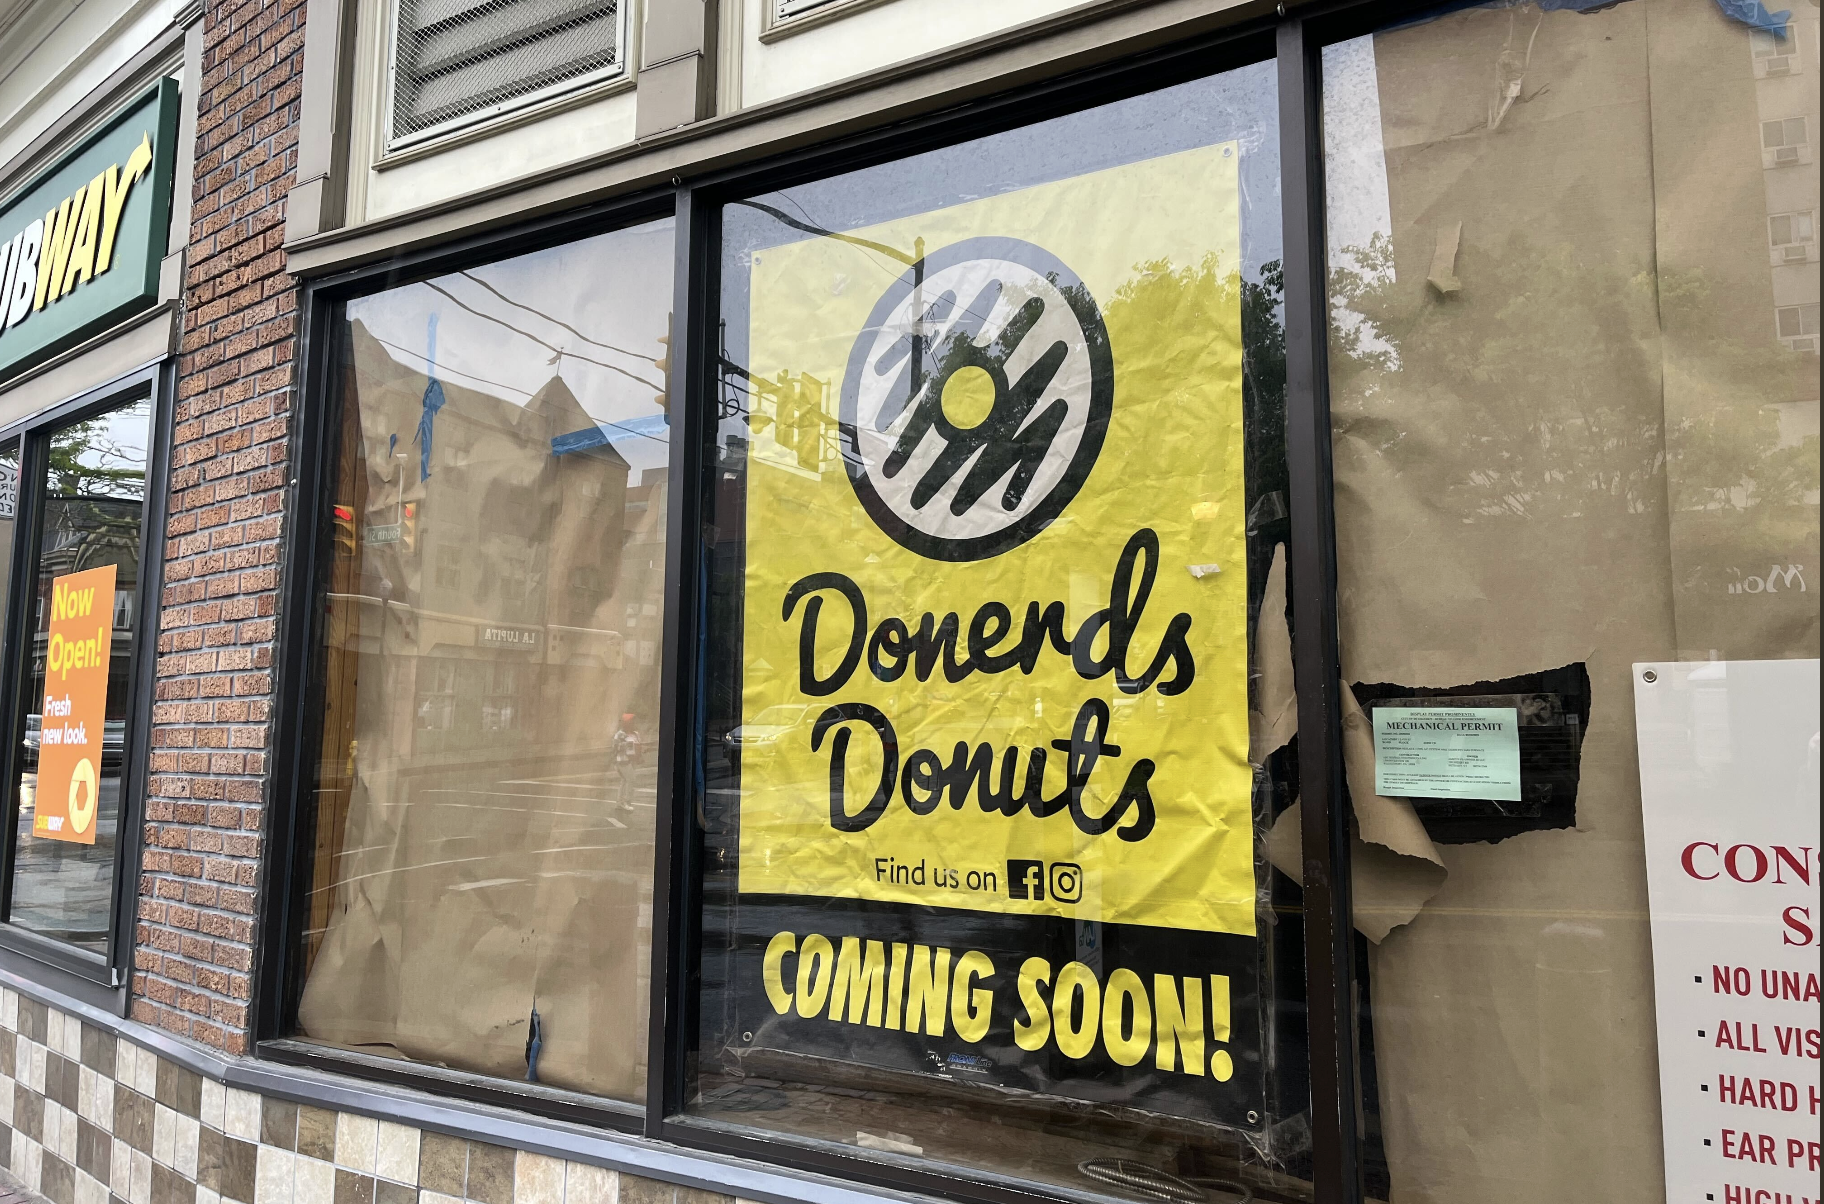 La nueva tienda de donas de South Bethlehem, Donerds Donuts, está cerca de abrir a mediados de julio